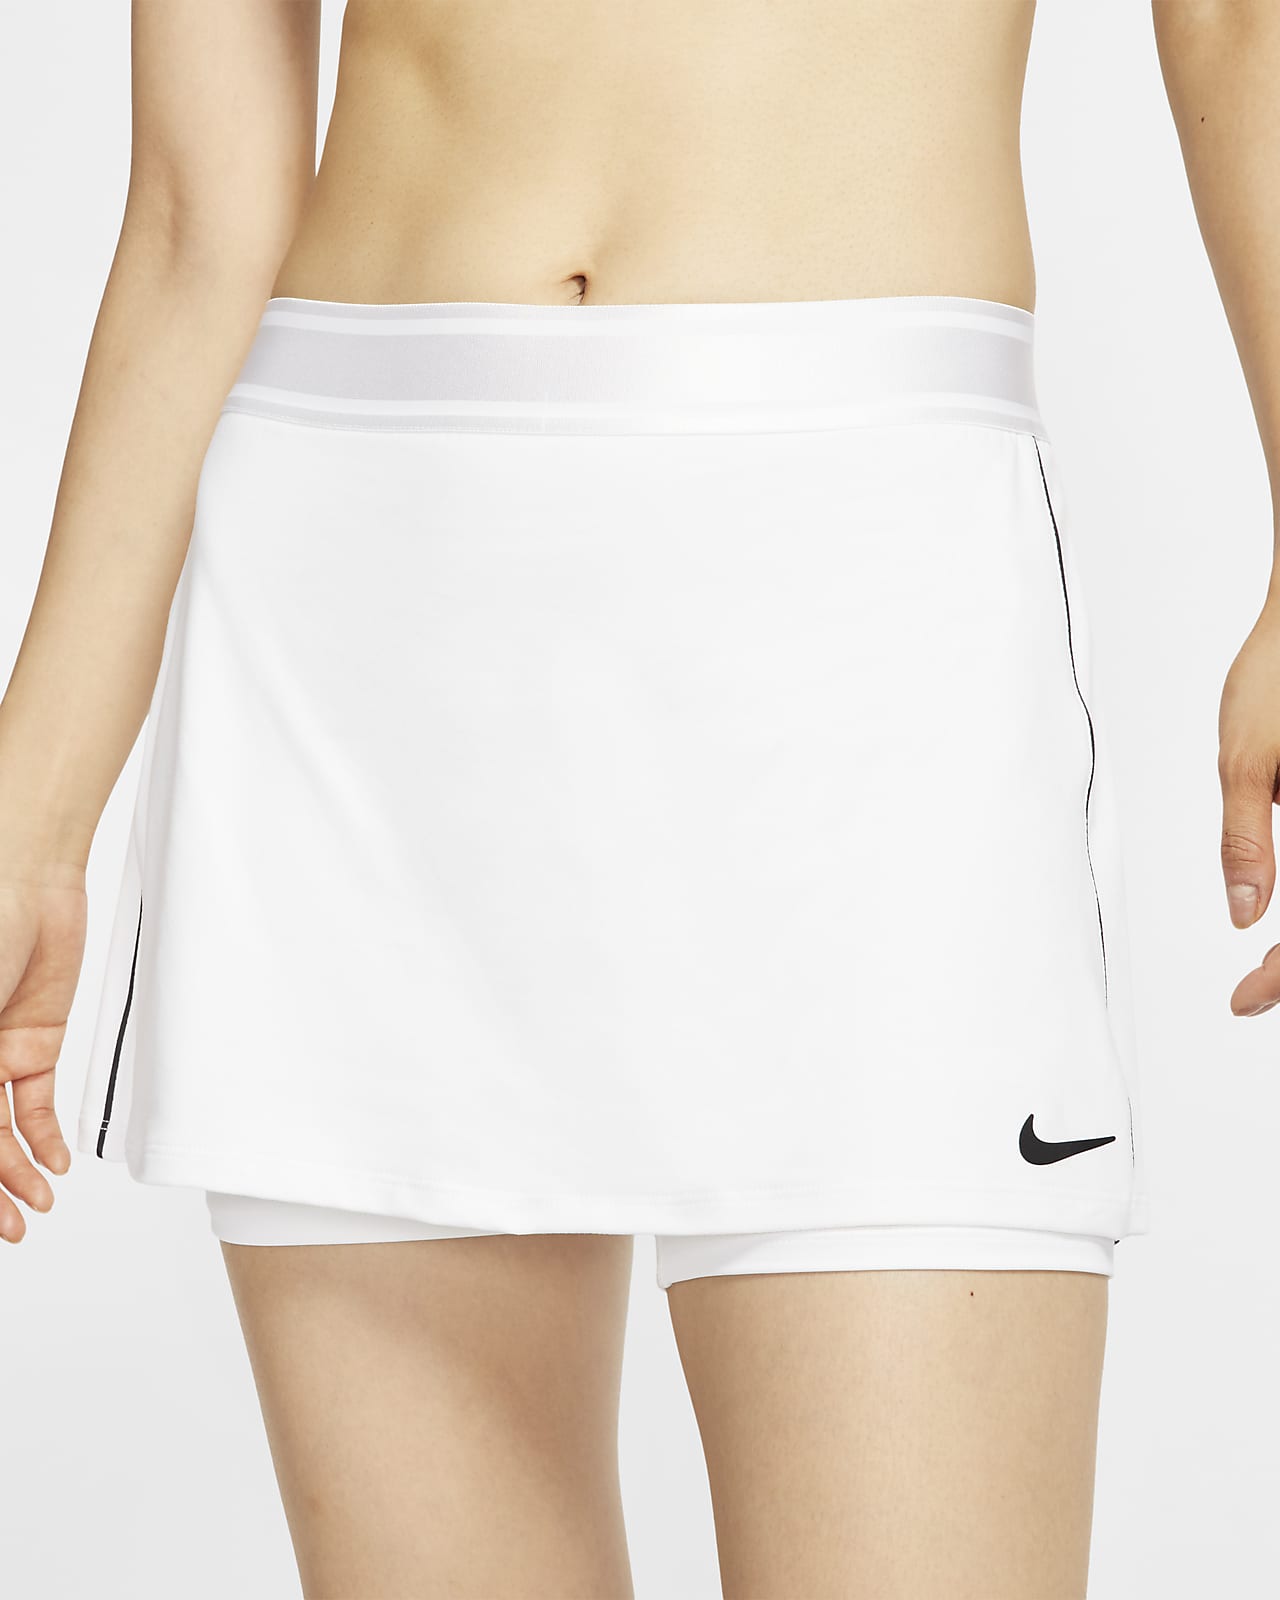 women's tennis outfits nike